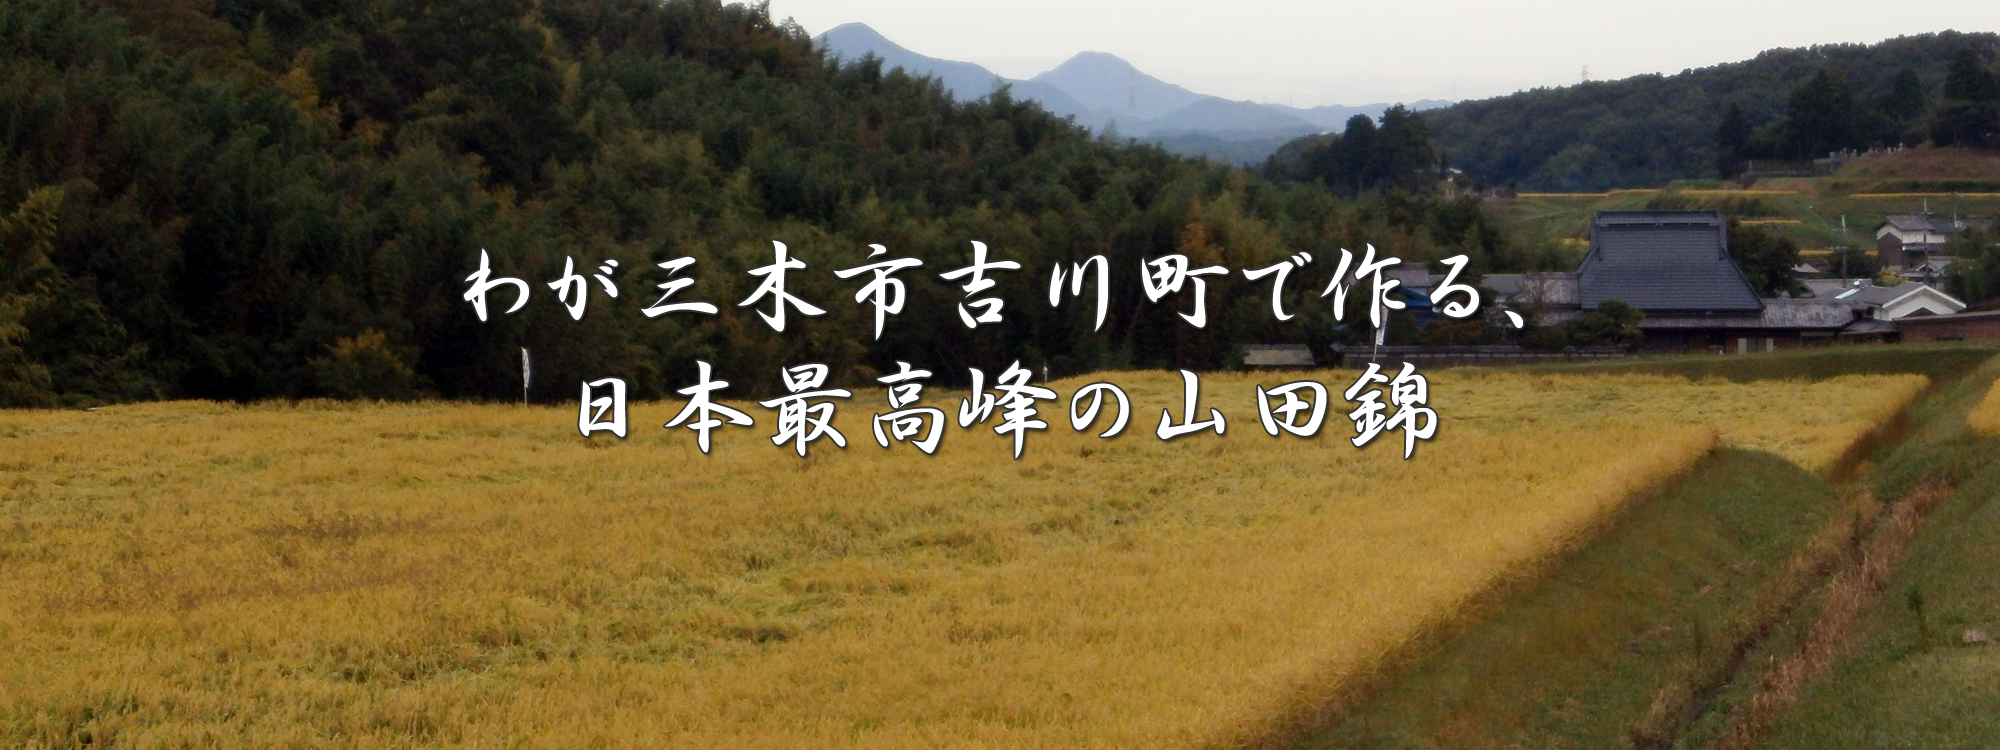 わが三木市吉川町で作る、日本最高峰の山田錦